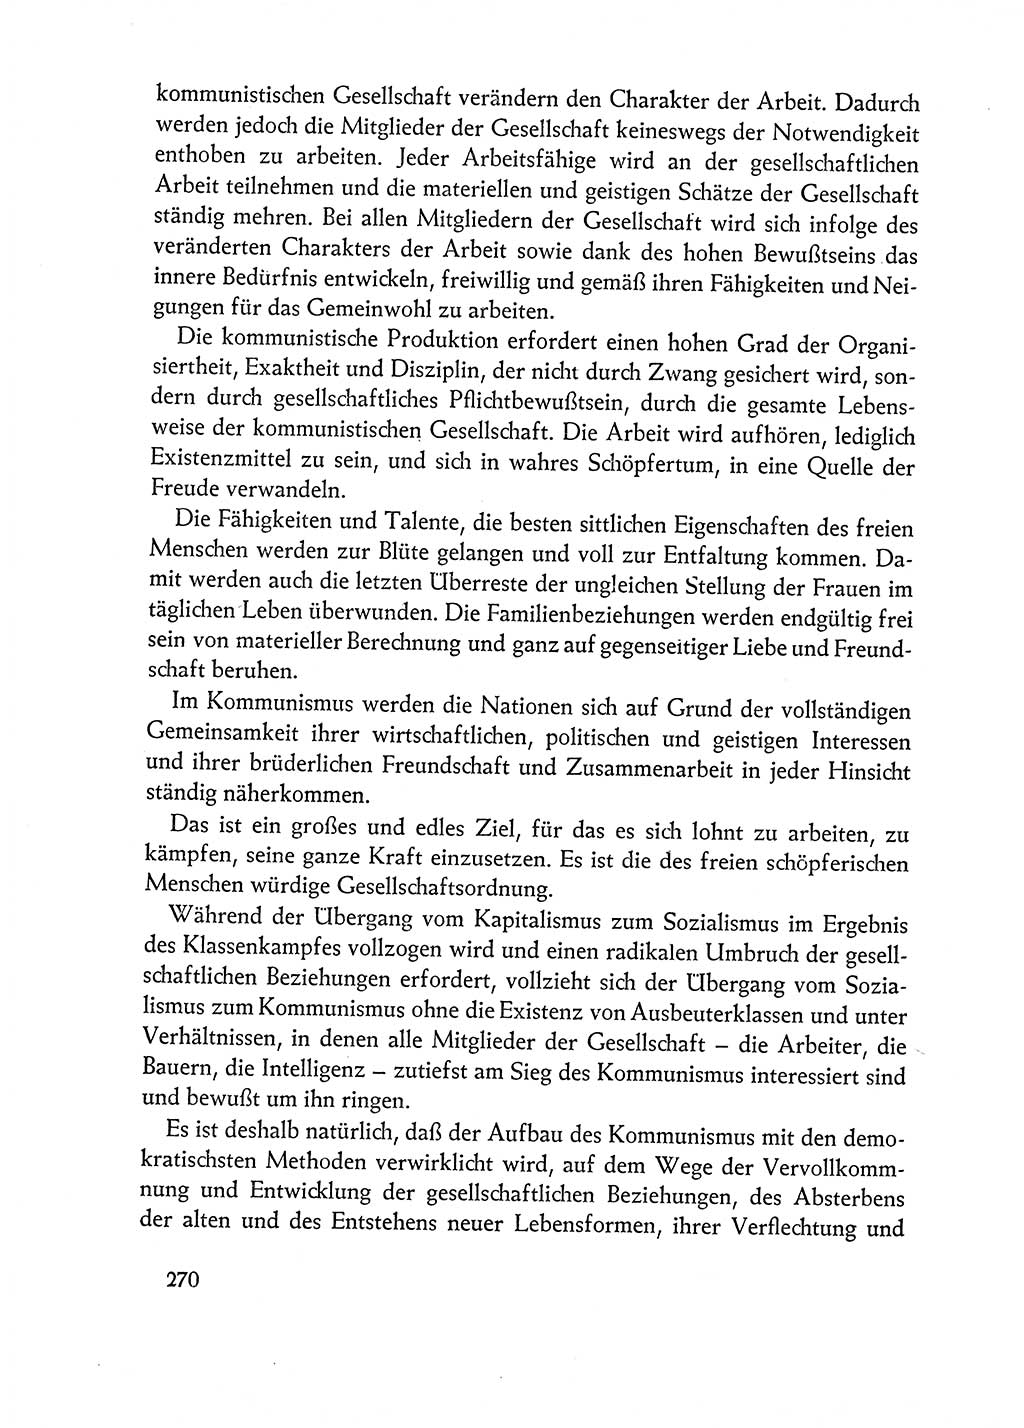 Dokumente der Sozialistischen Einheitspartei Deutschlands (SED) [Deutsche Demokratische Republik (DDR)] 1962-1963, Seite 270 (Dok. SED DDR 1962-1963, S. 270)